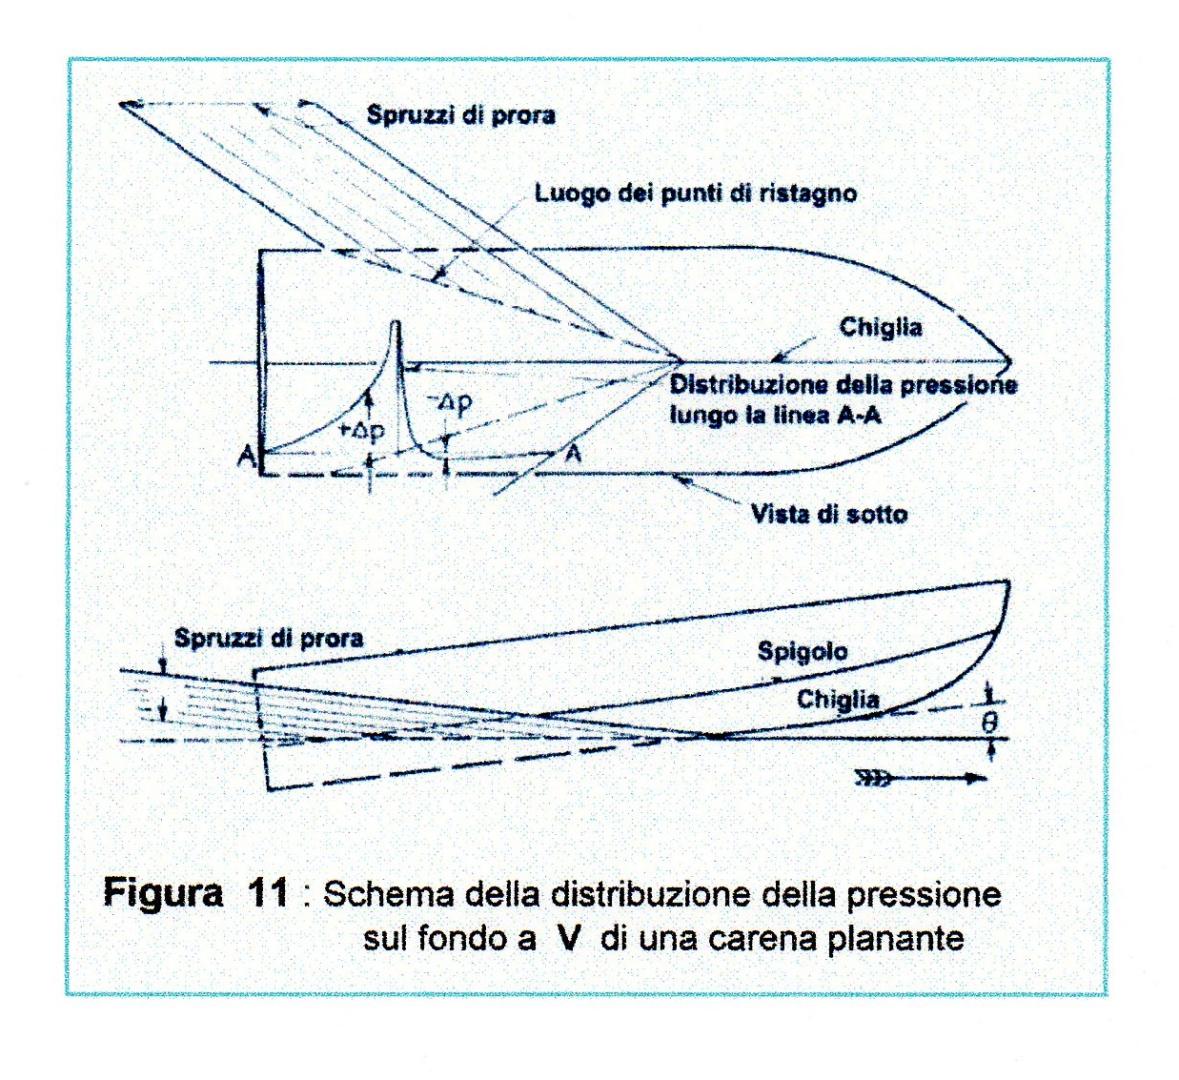 Schema della distribuzione della pressione sul fondo a V di una carena planante